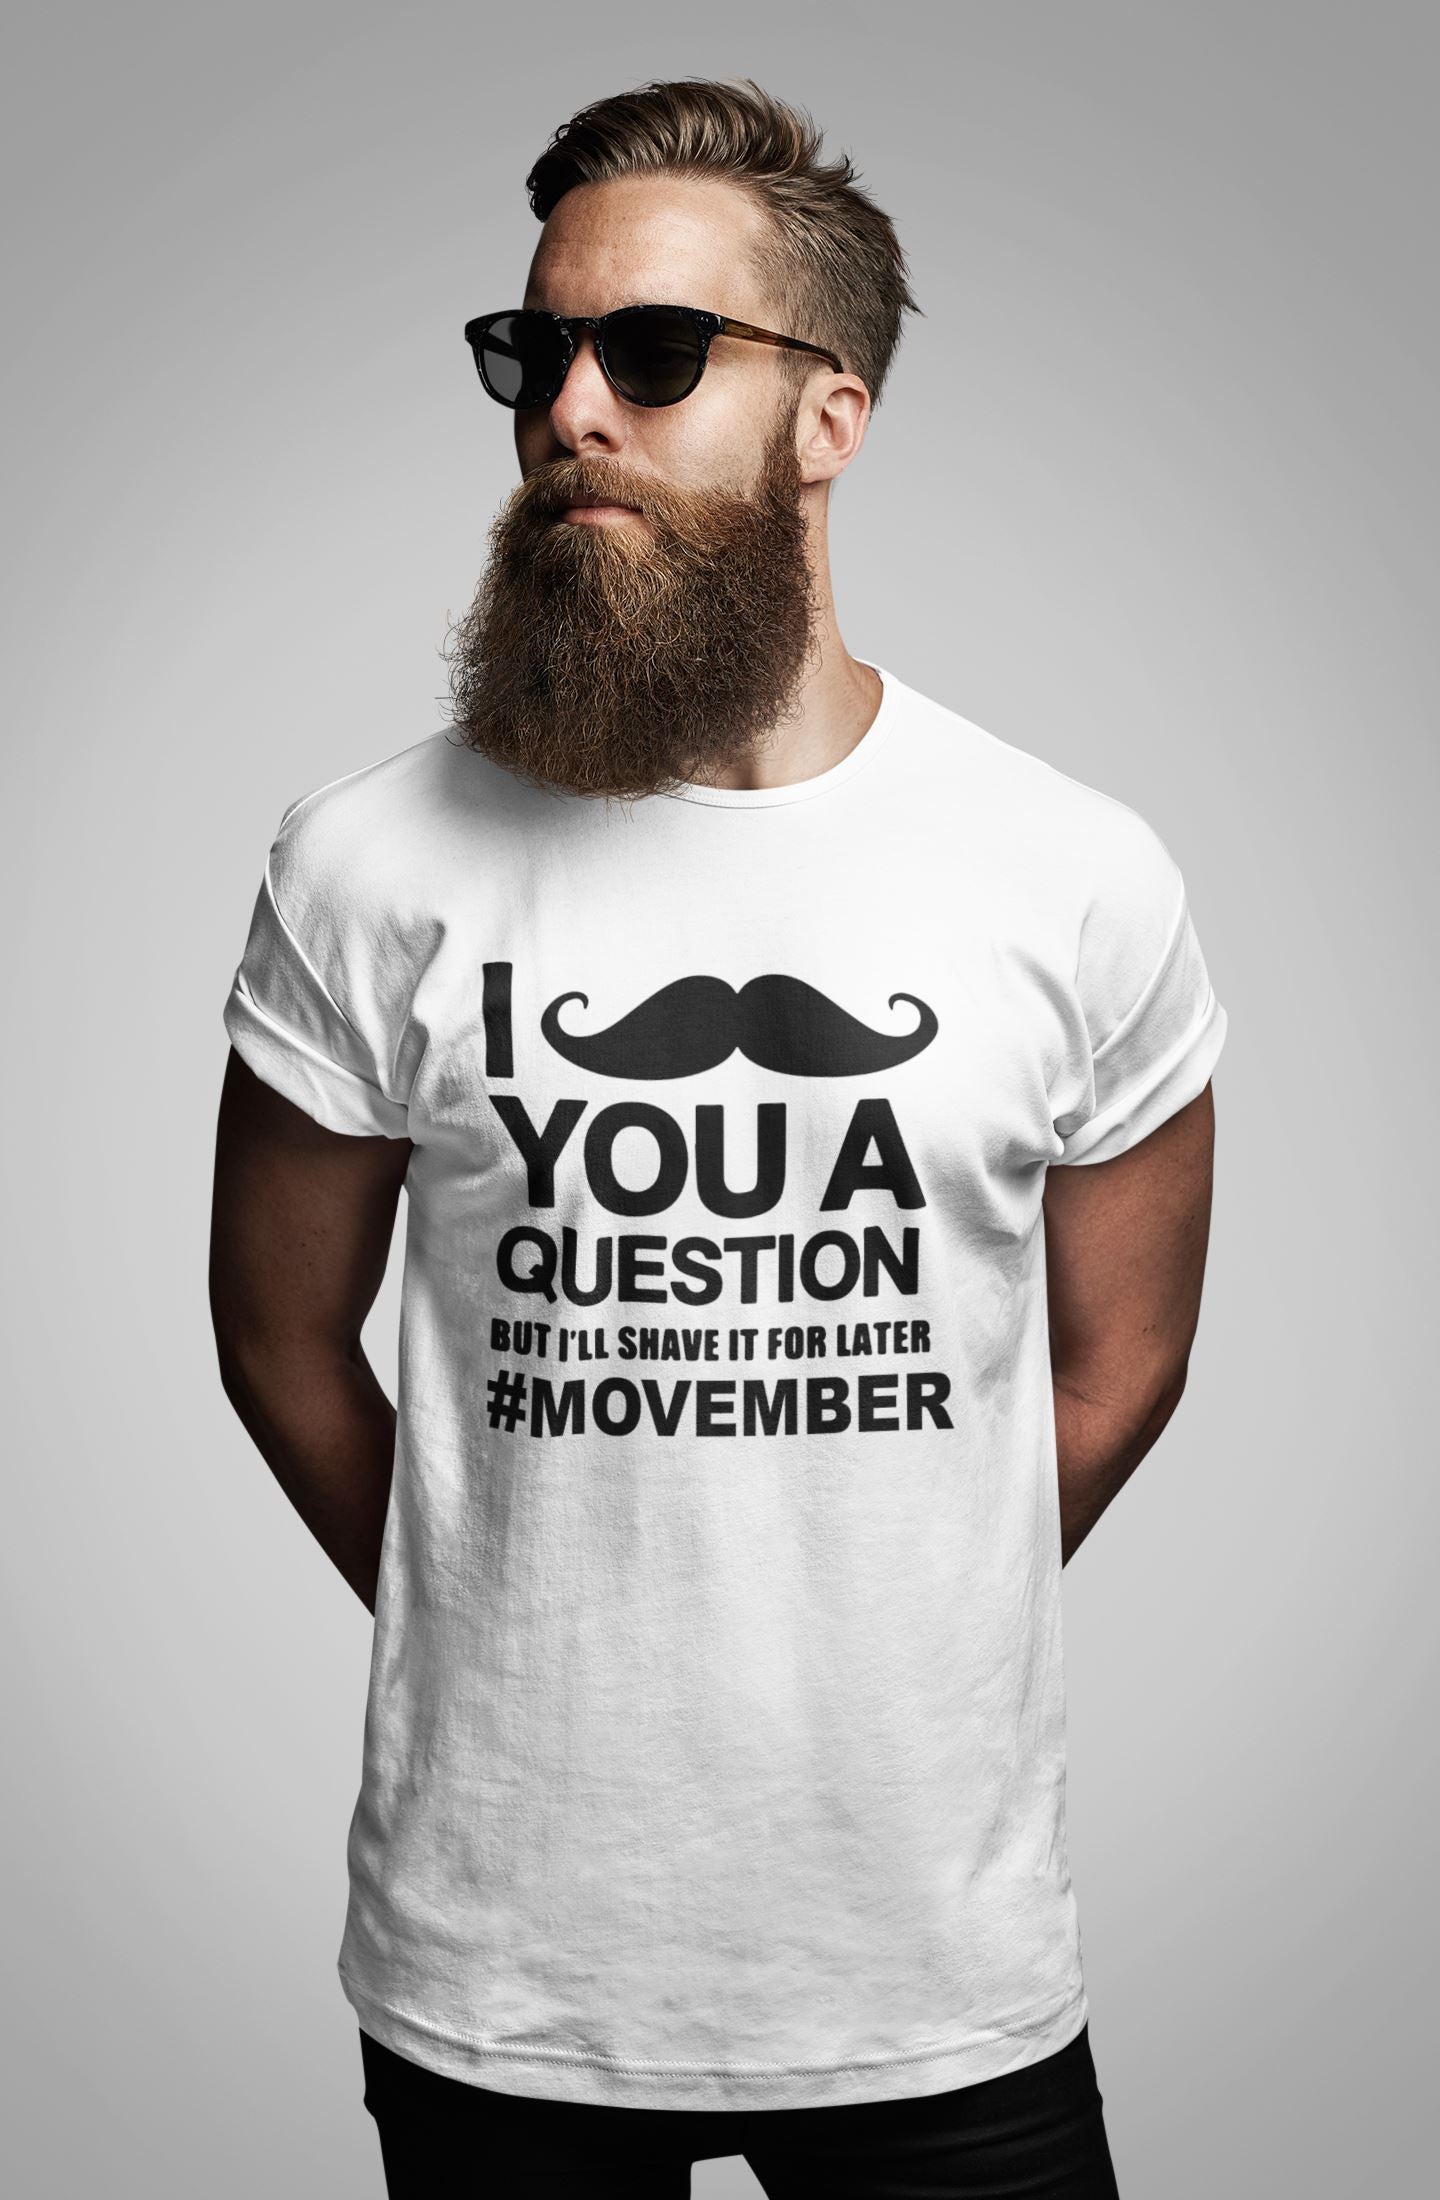 Movember Awareness T-shirt